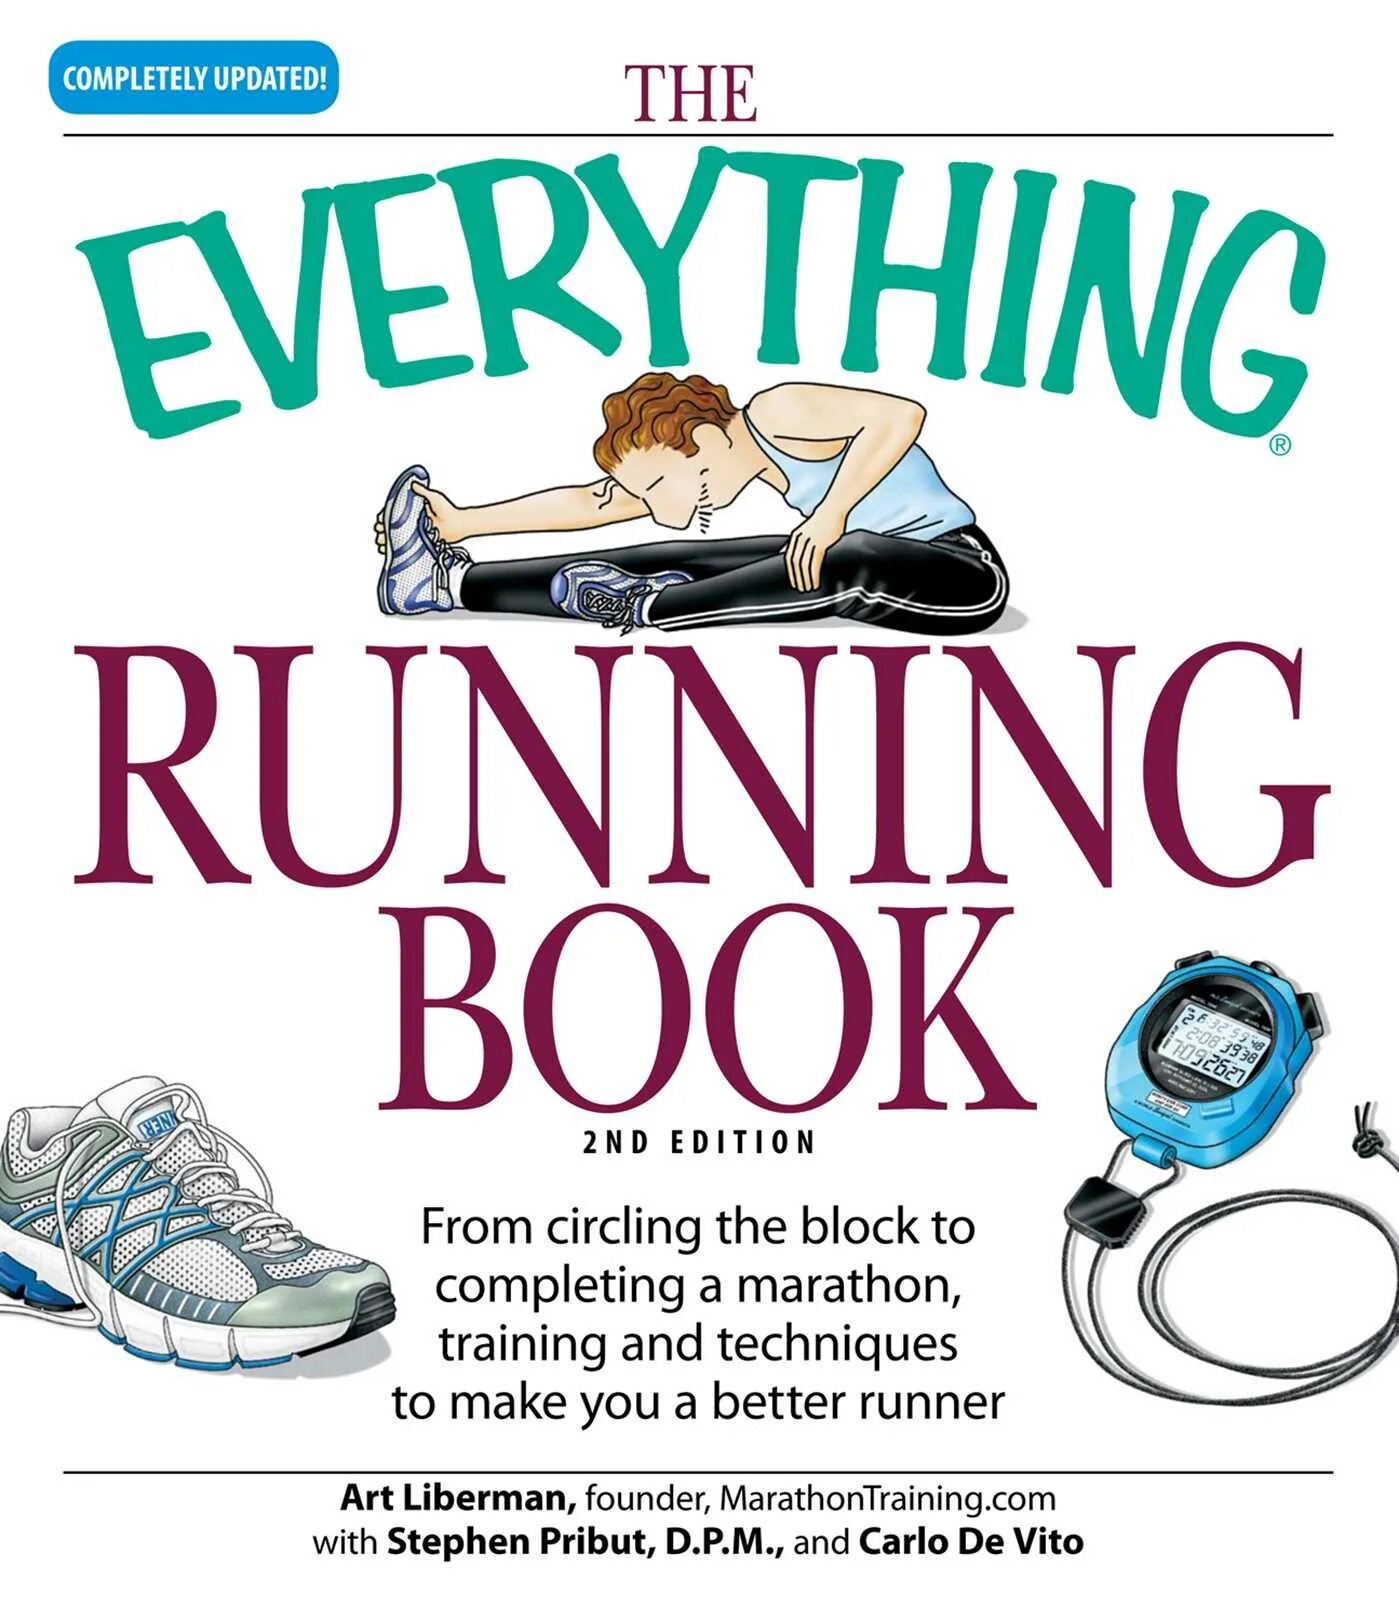 Everything runs. Everything everything книга. The Running book. Books Run.